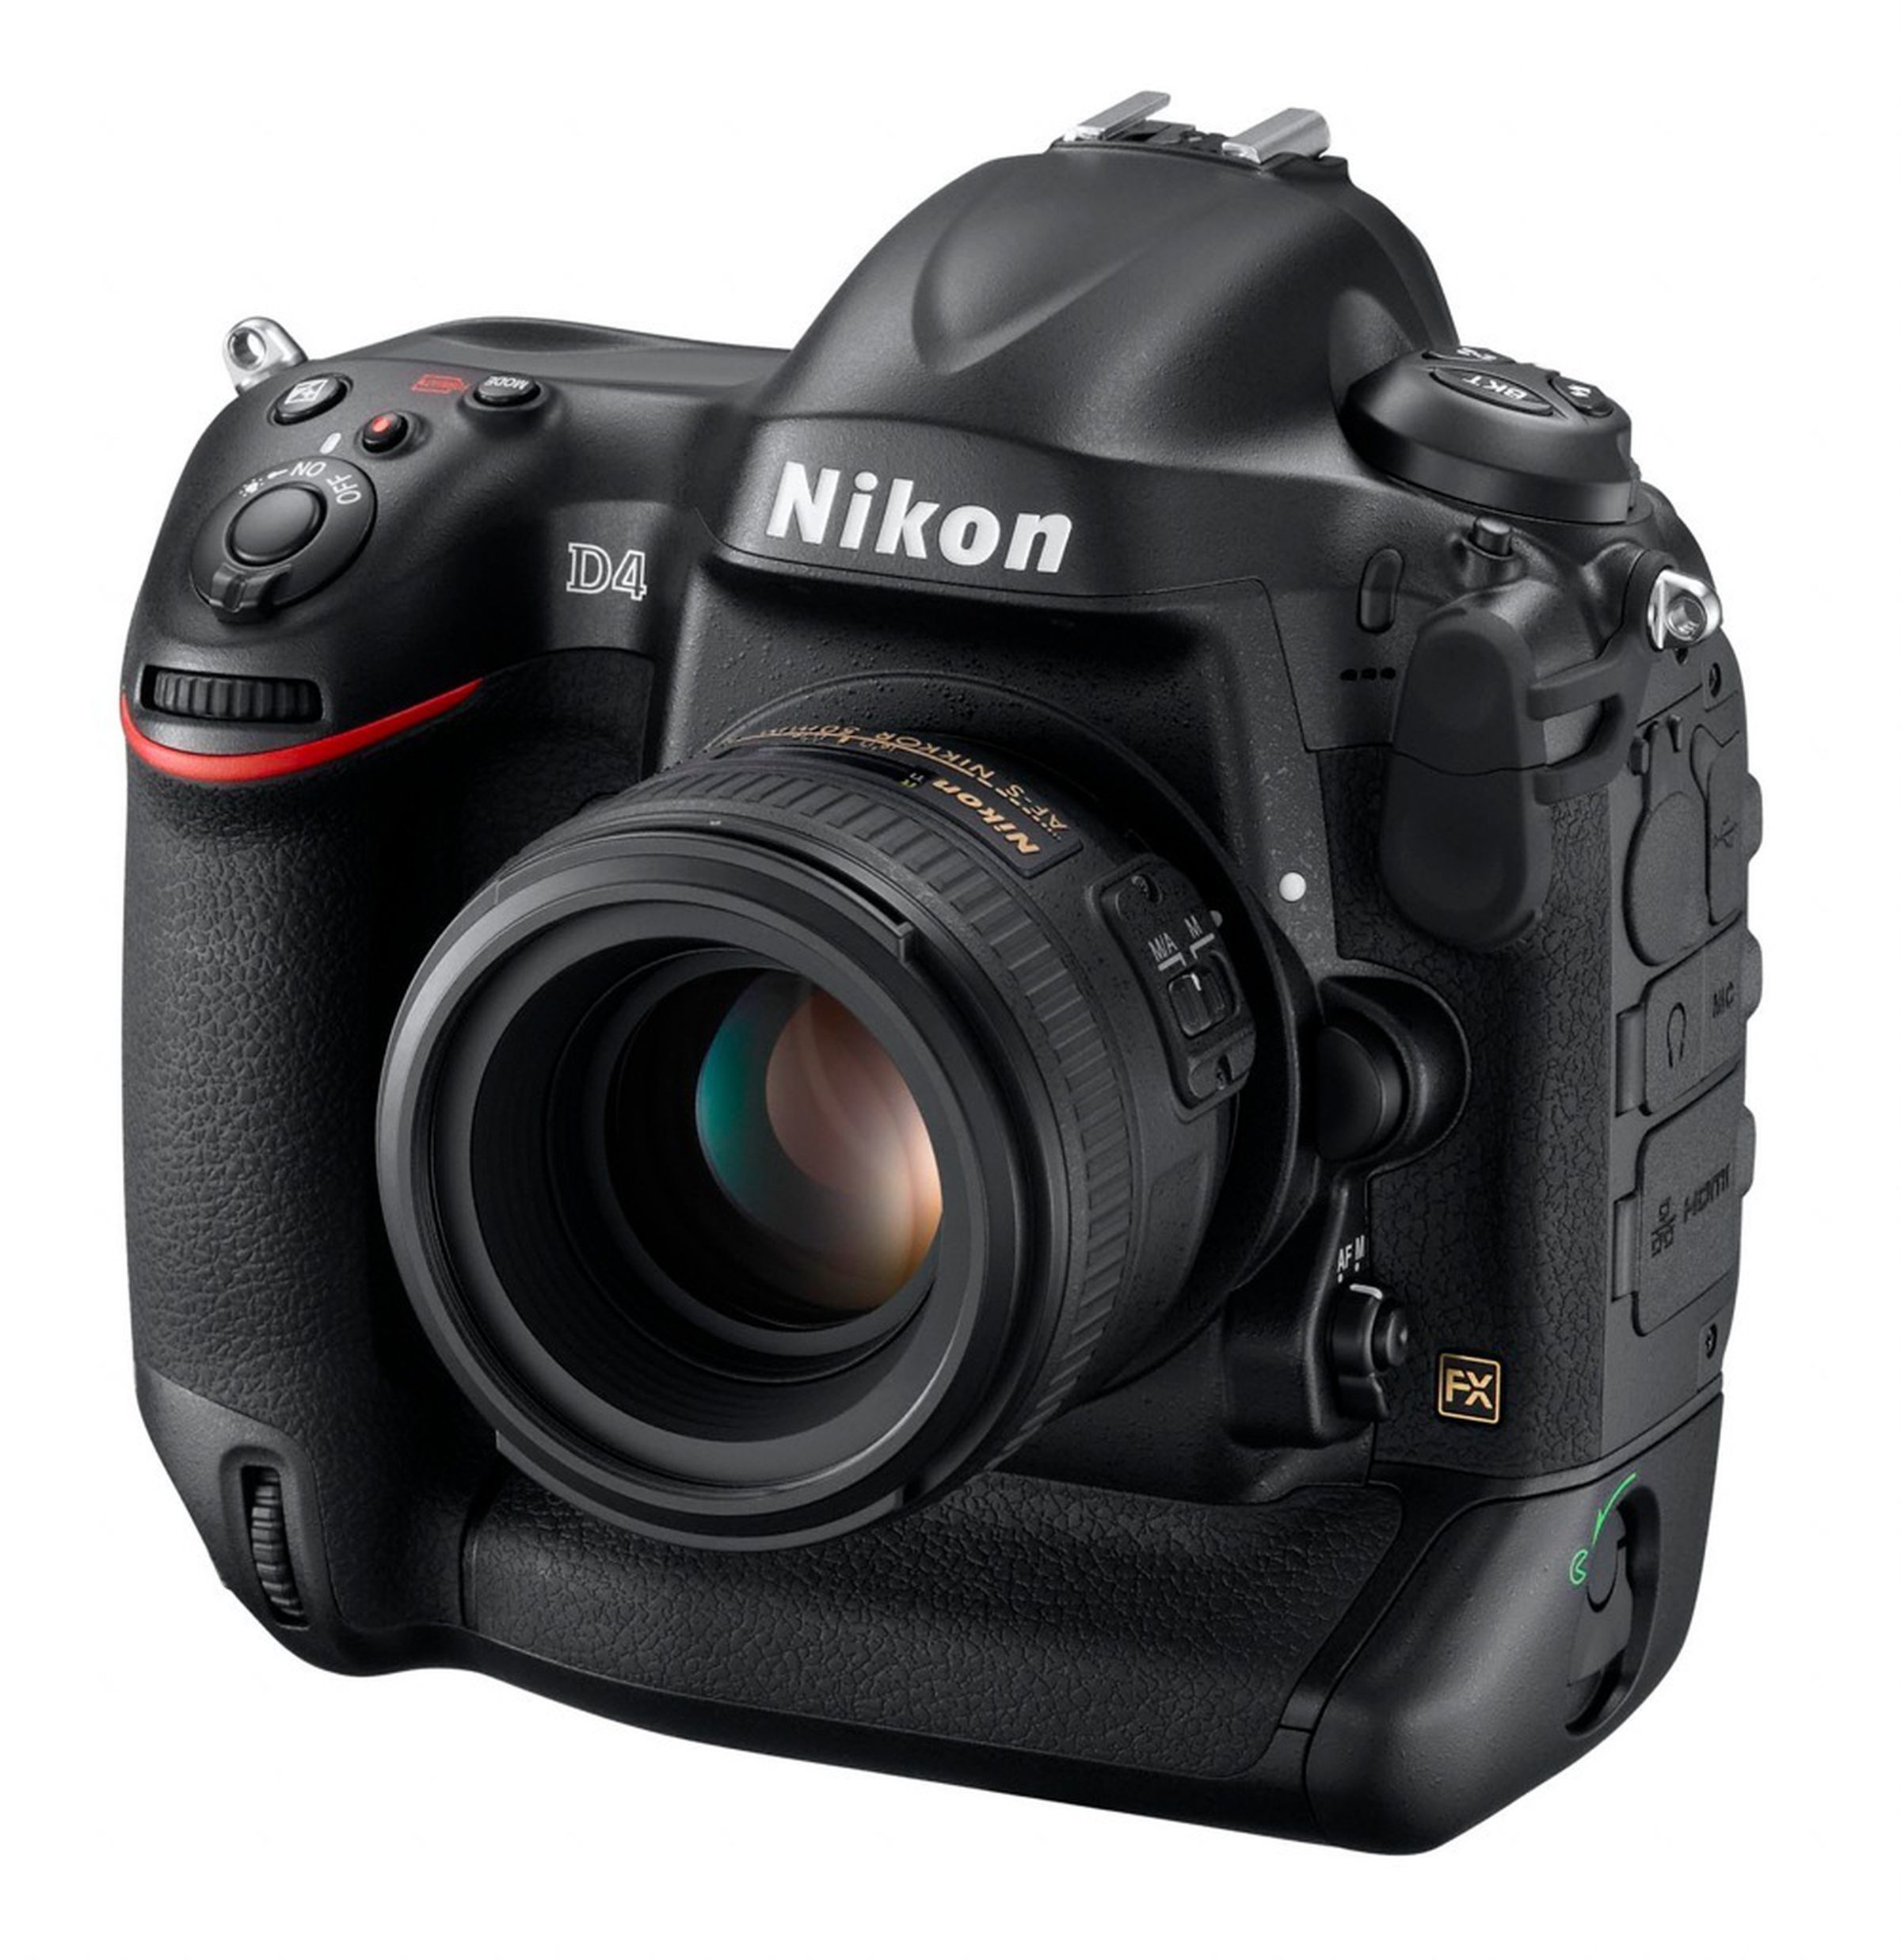 Nikon D4 press pictures